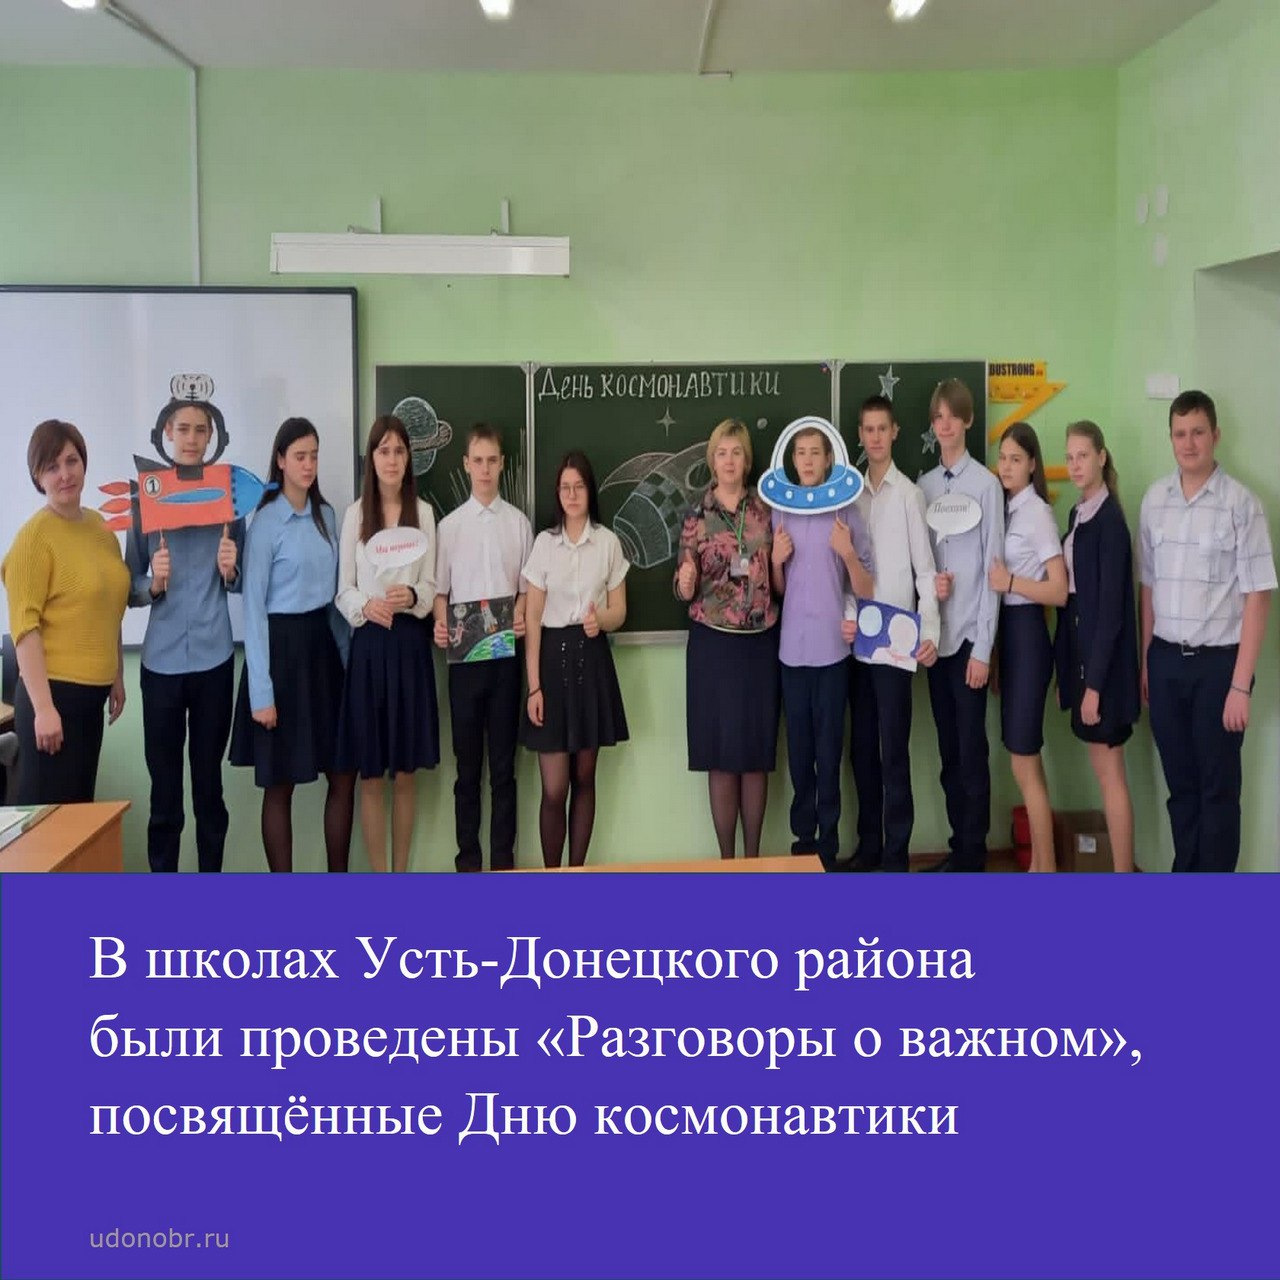 В школах Усть-Донецкого района были проведены «Разговоры о важном», посвящённые Дню космонавтики